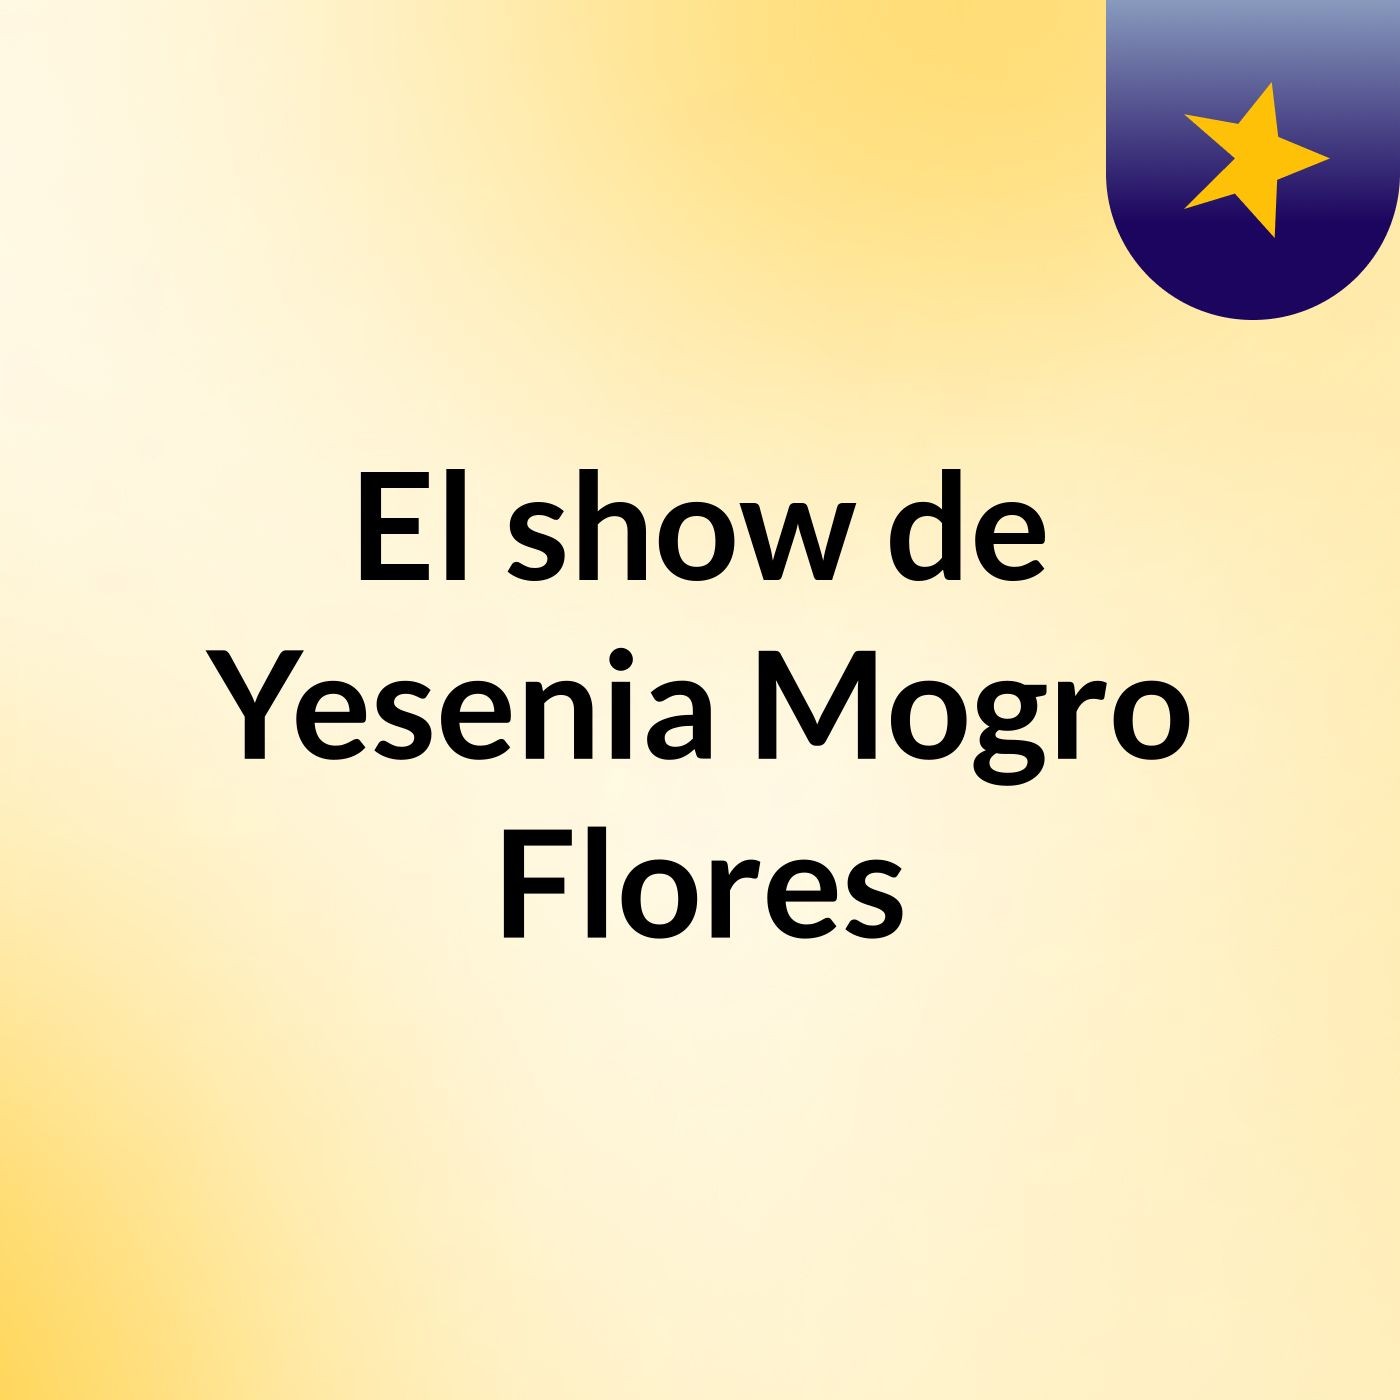 El show de Yesenia Mogro Flores